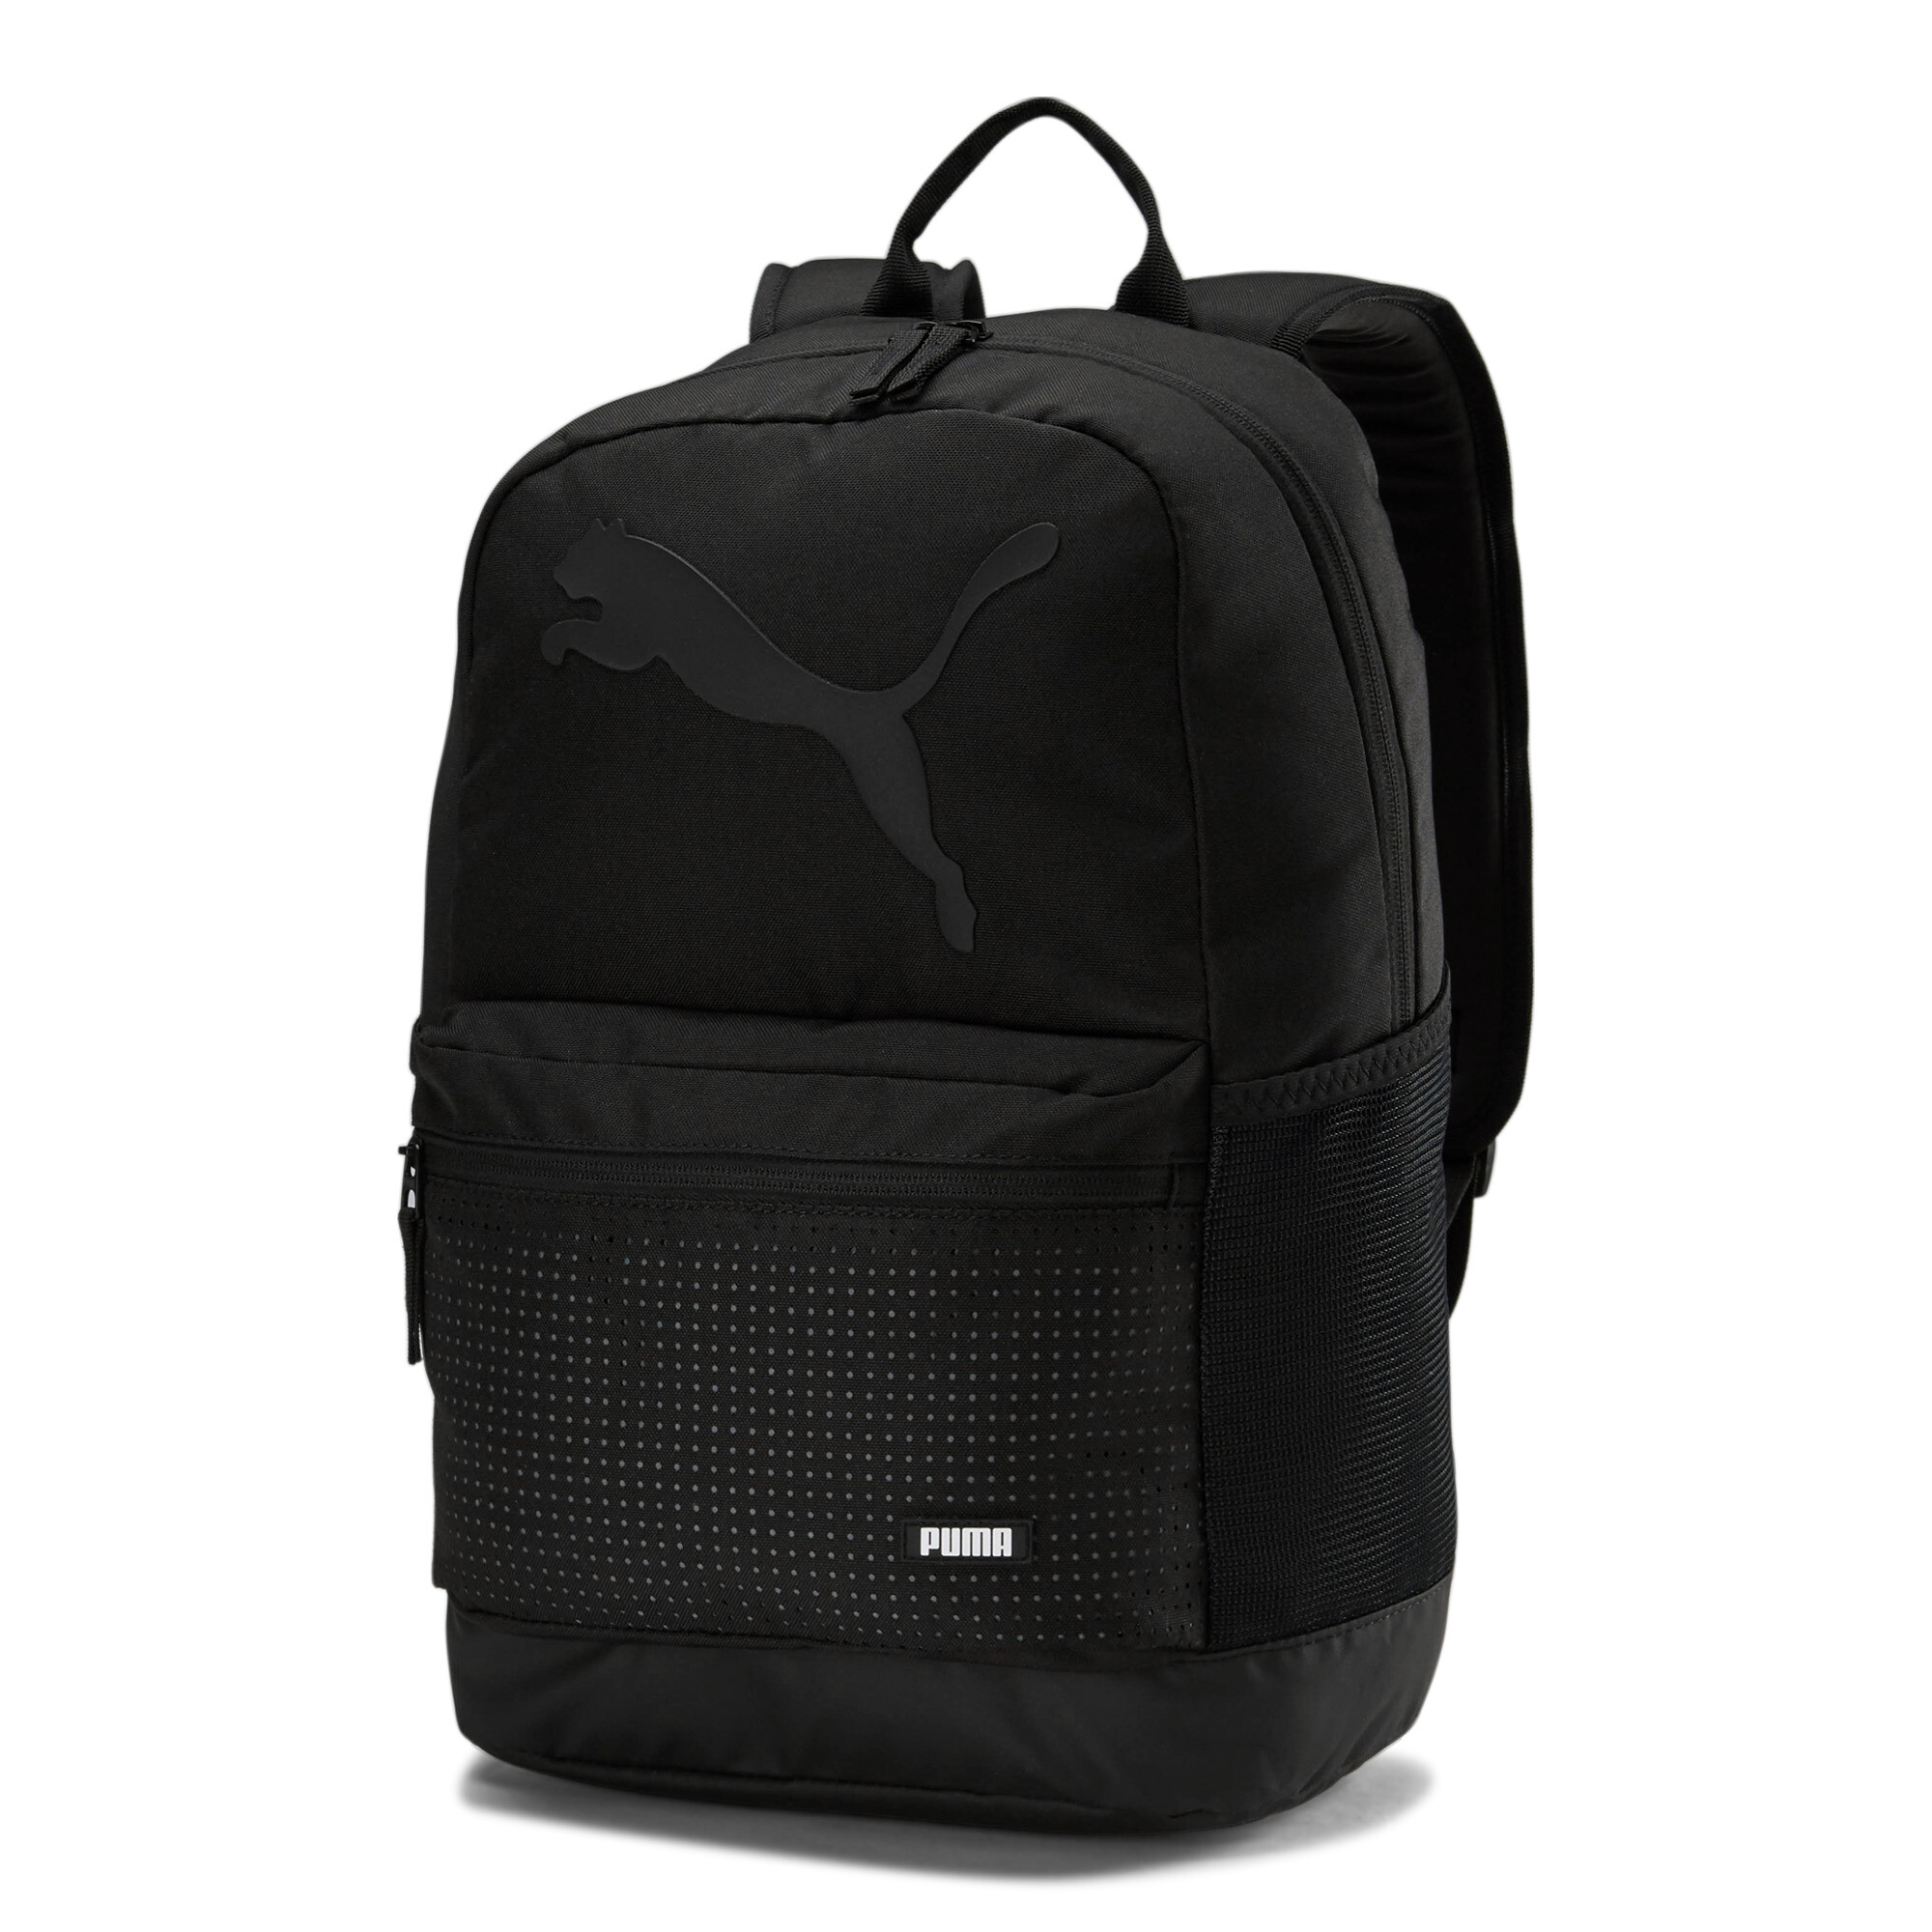 puma backpack ebay